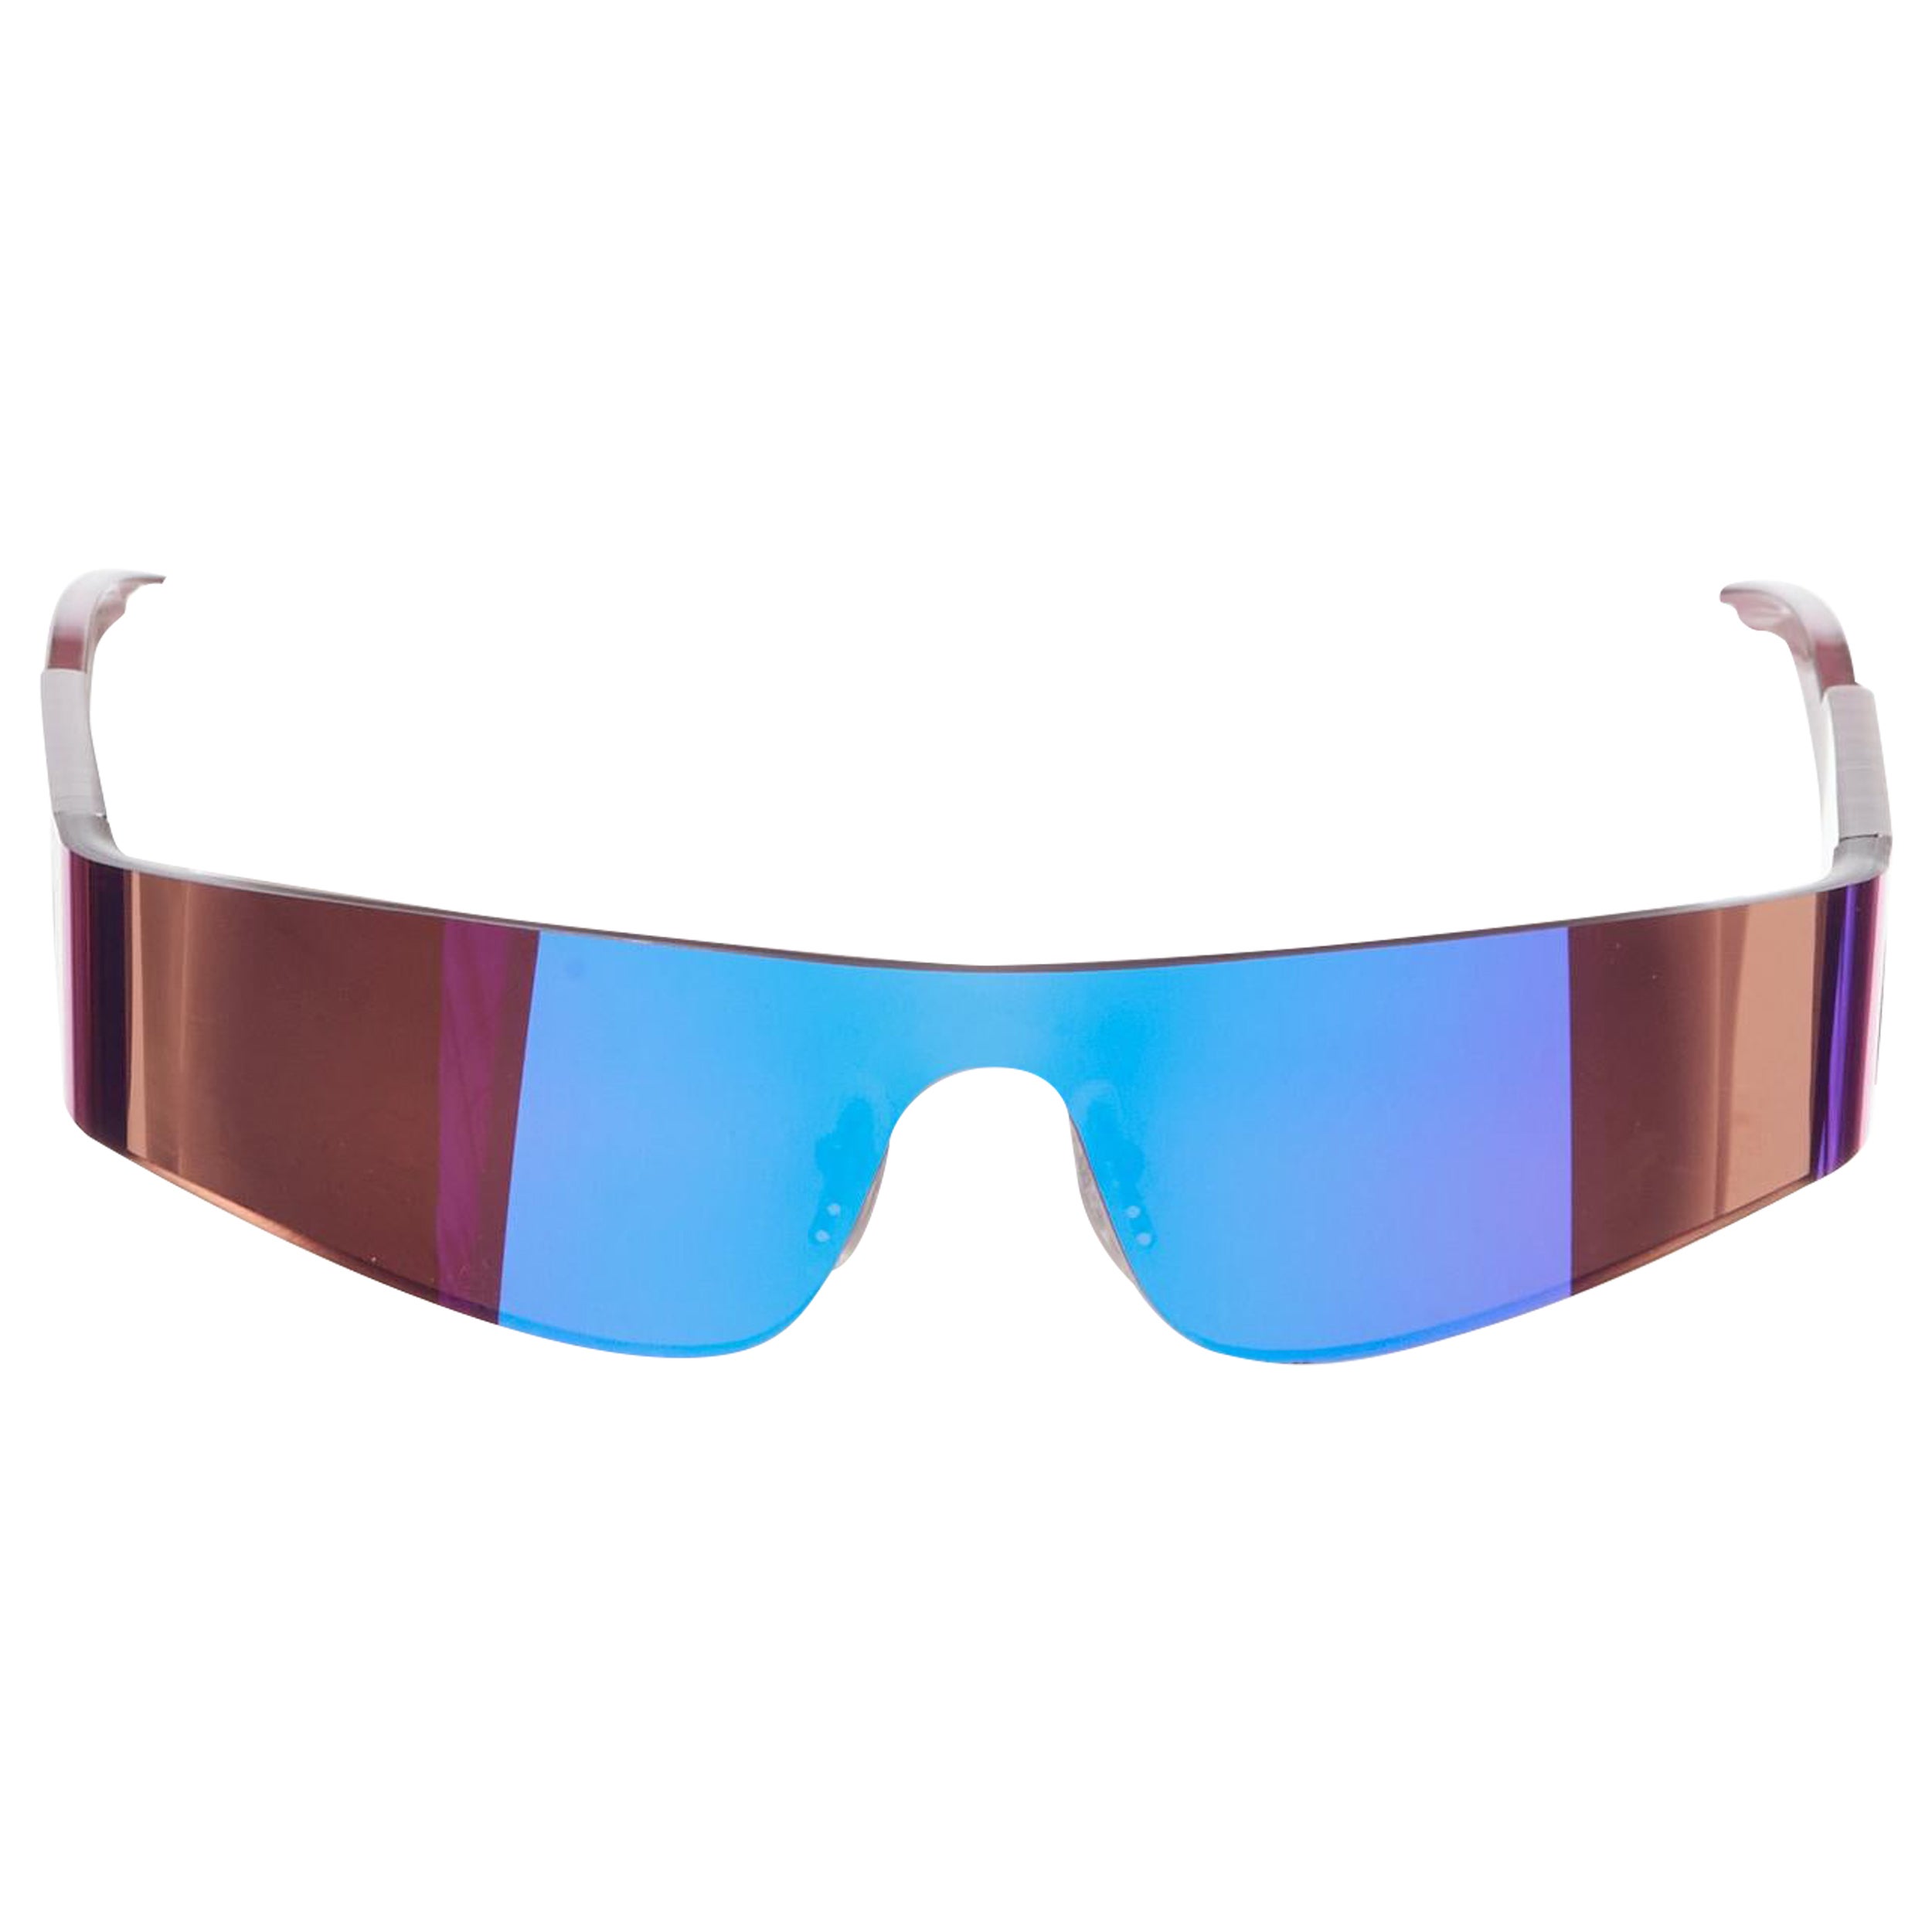 BALENCIAGA DEMNA BB00141S 003 purple reflective futuristic shield sunglasses